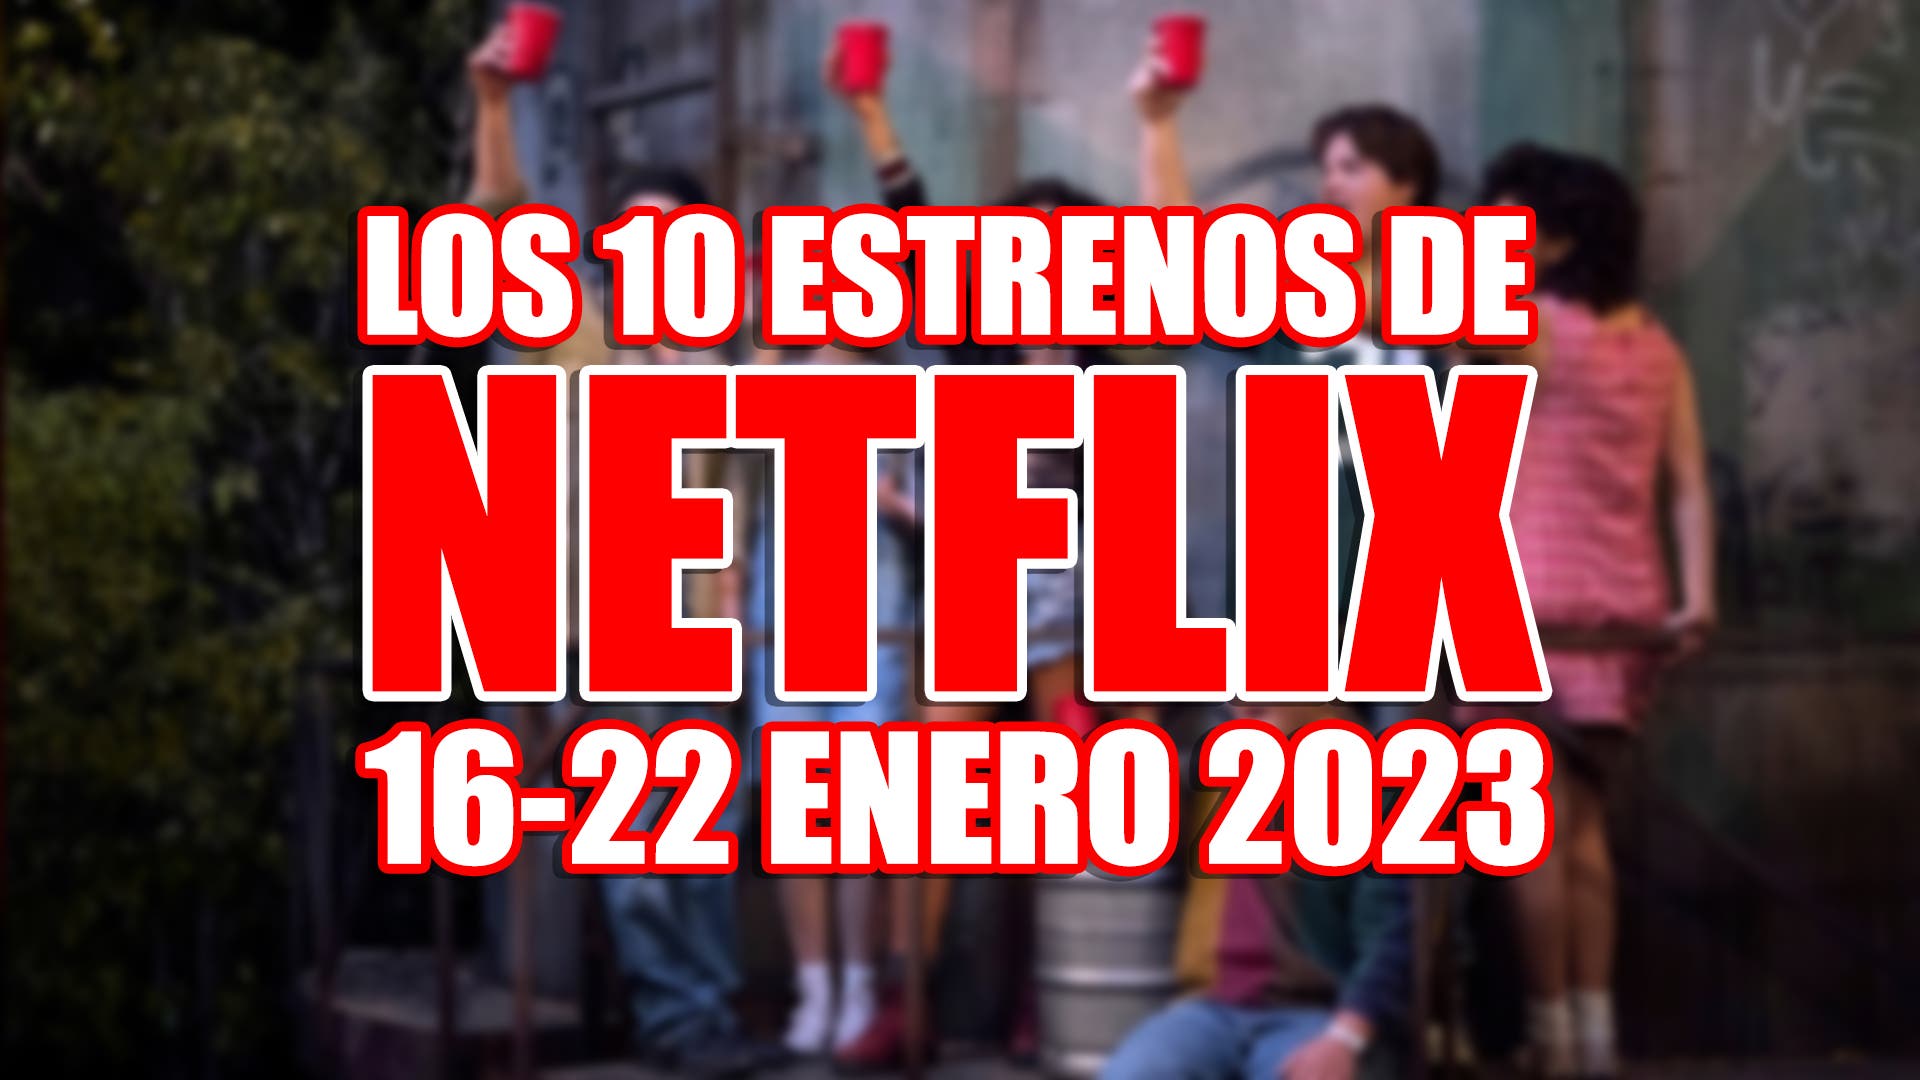 Los 10 estrenos de Netflix esta semana (1622 enero 2023) y la serie